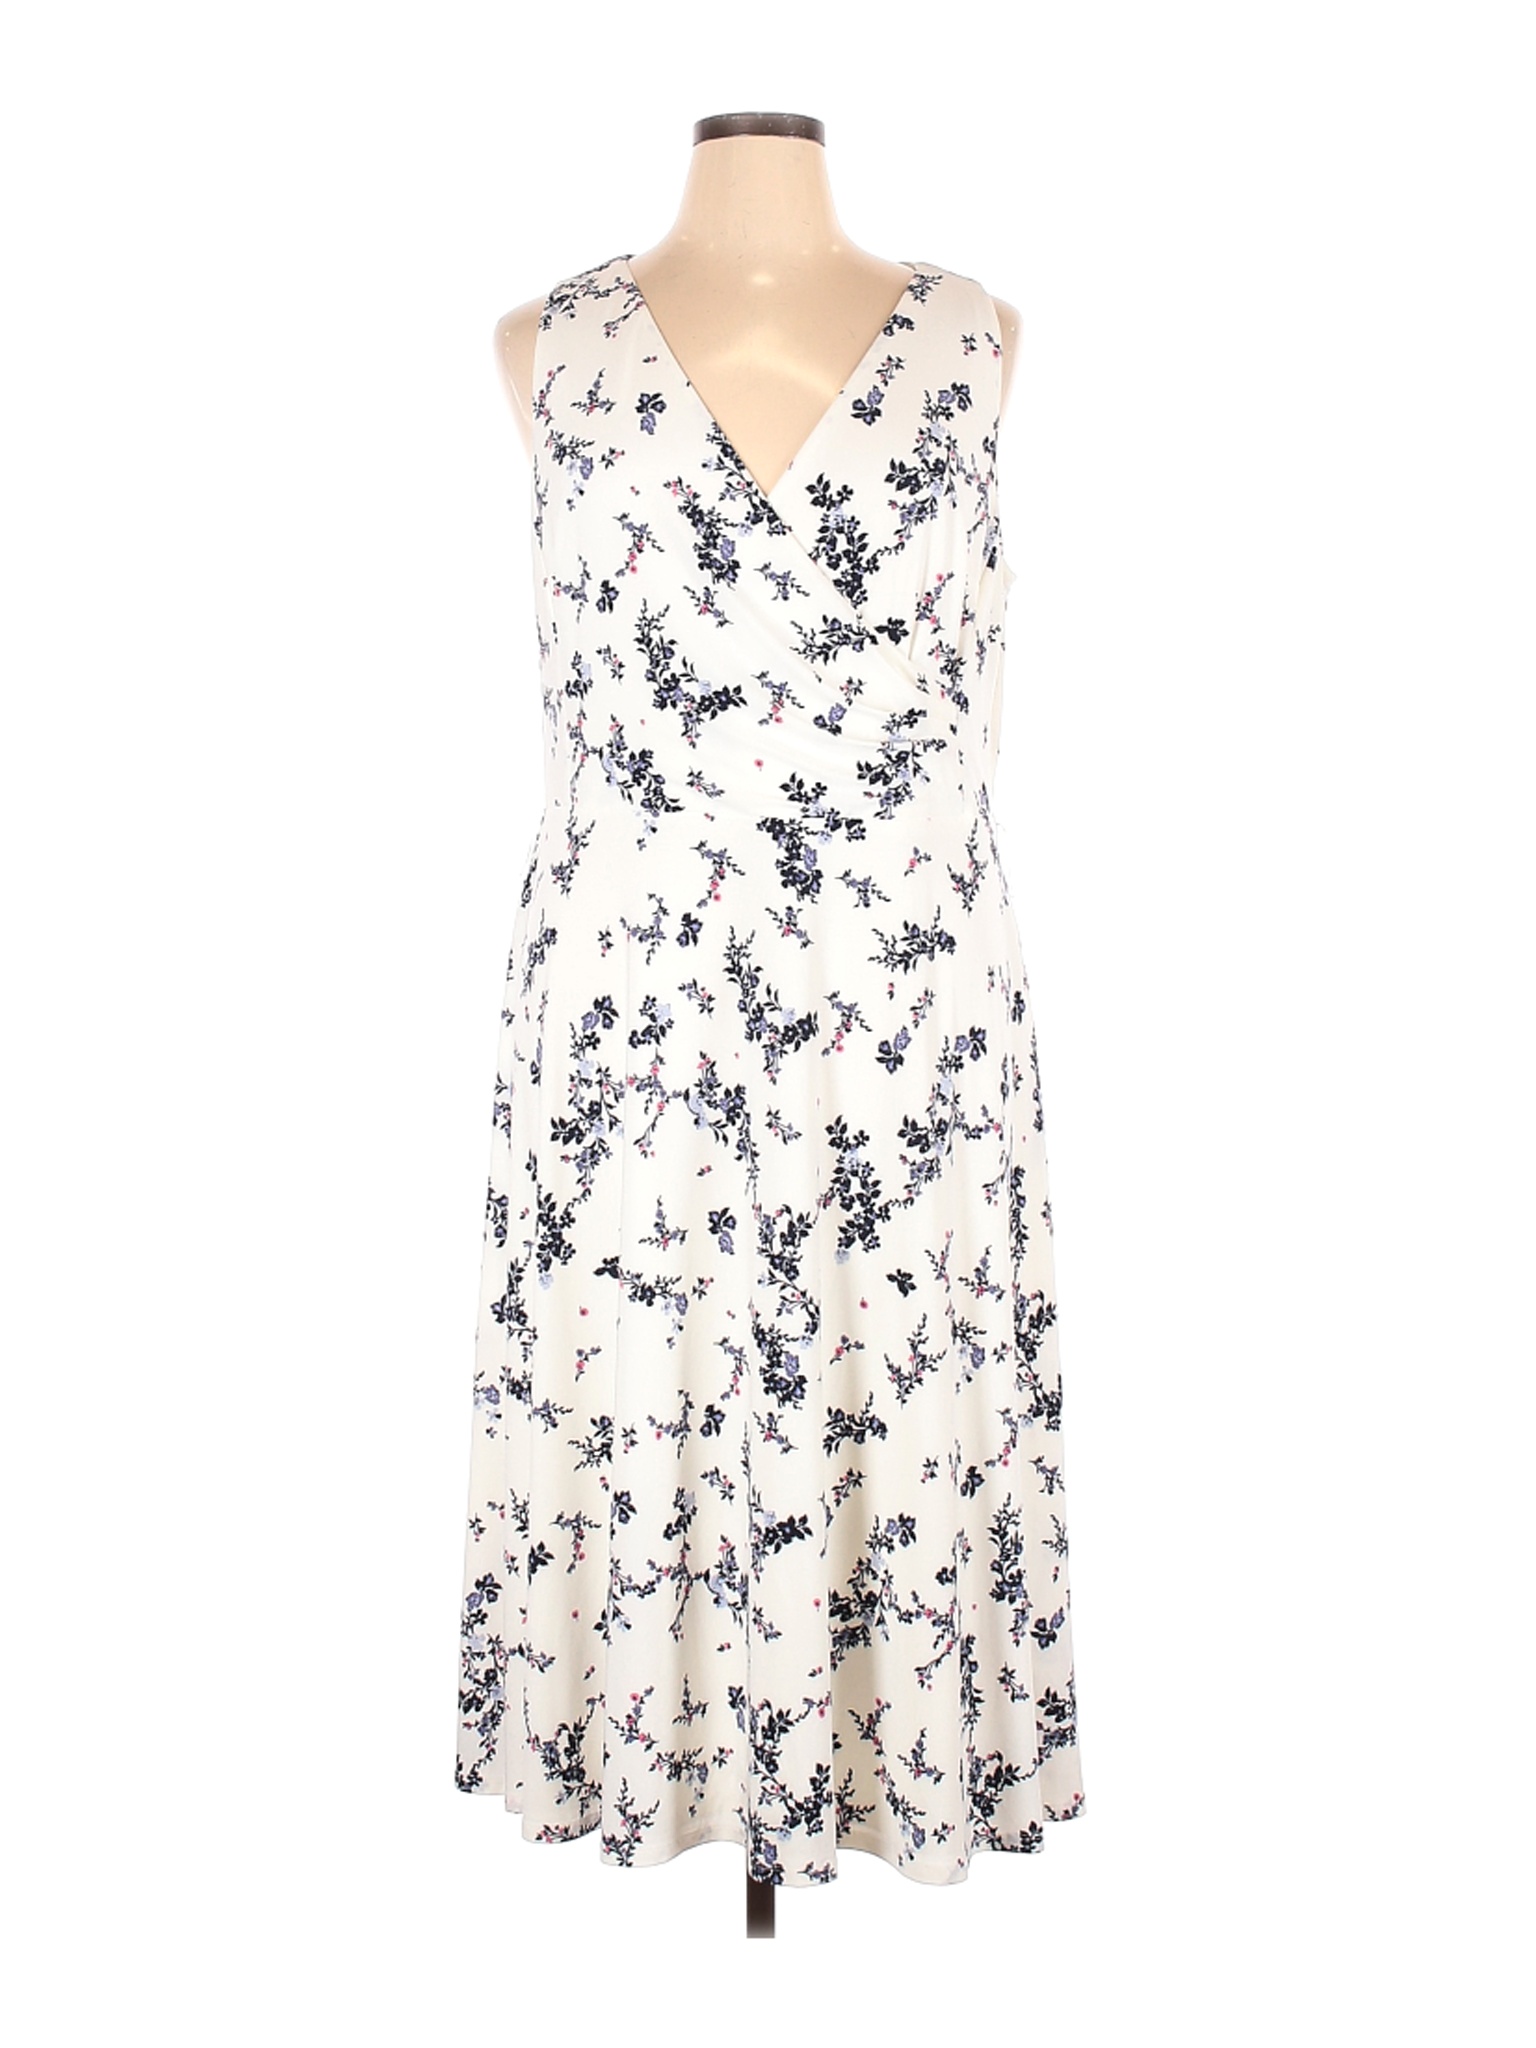 Lauren By Ralph Lauren Women White Casual Dress 18 Plus Ebay Consegna gratuita sugli ordini superiori a 80€. ebay